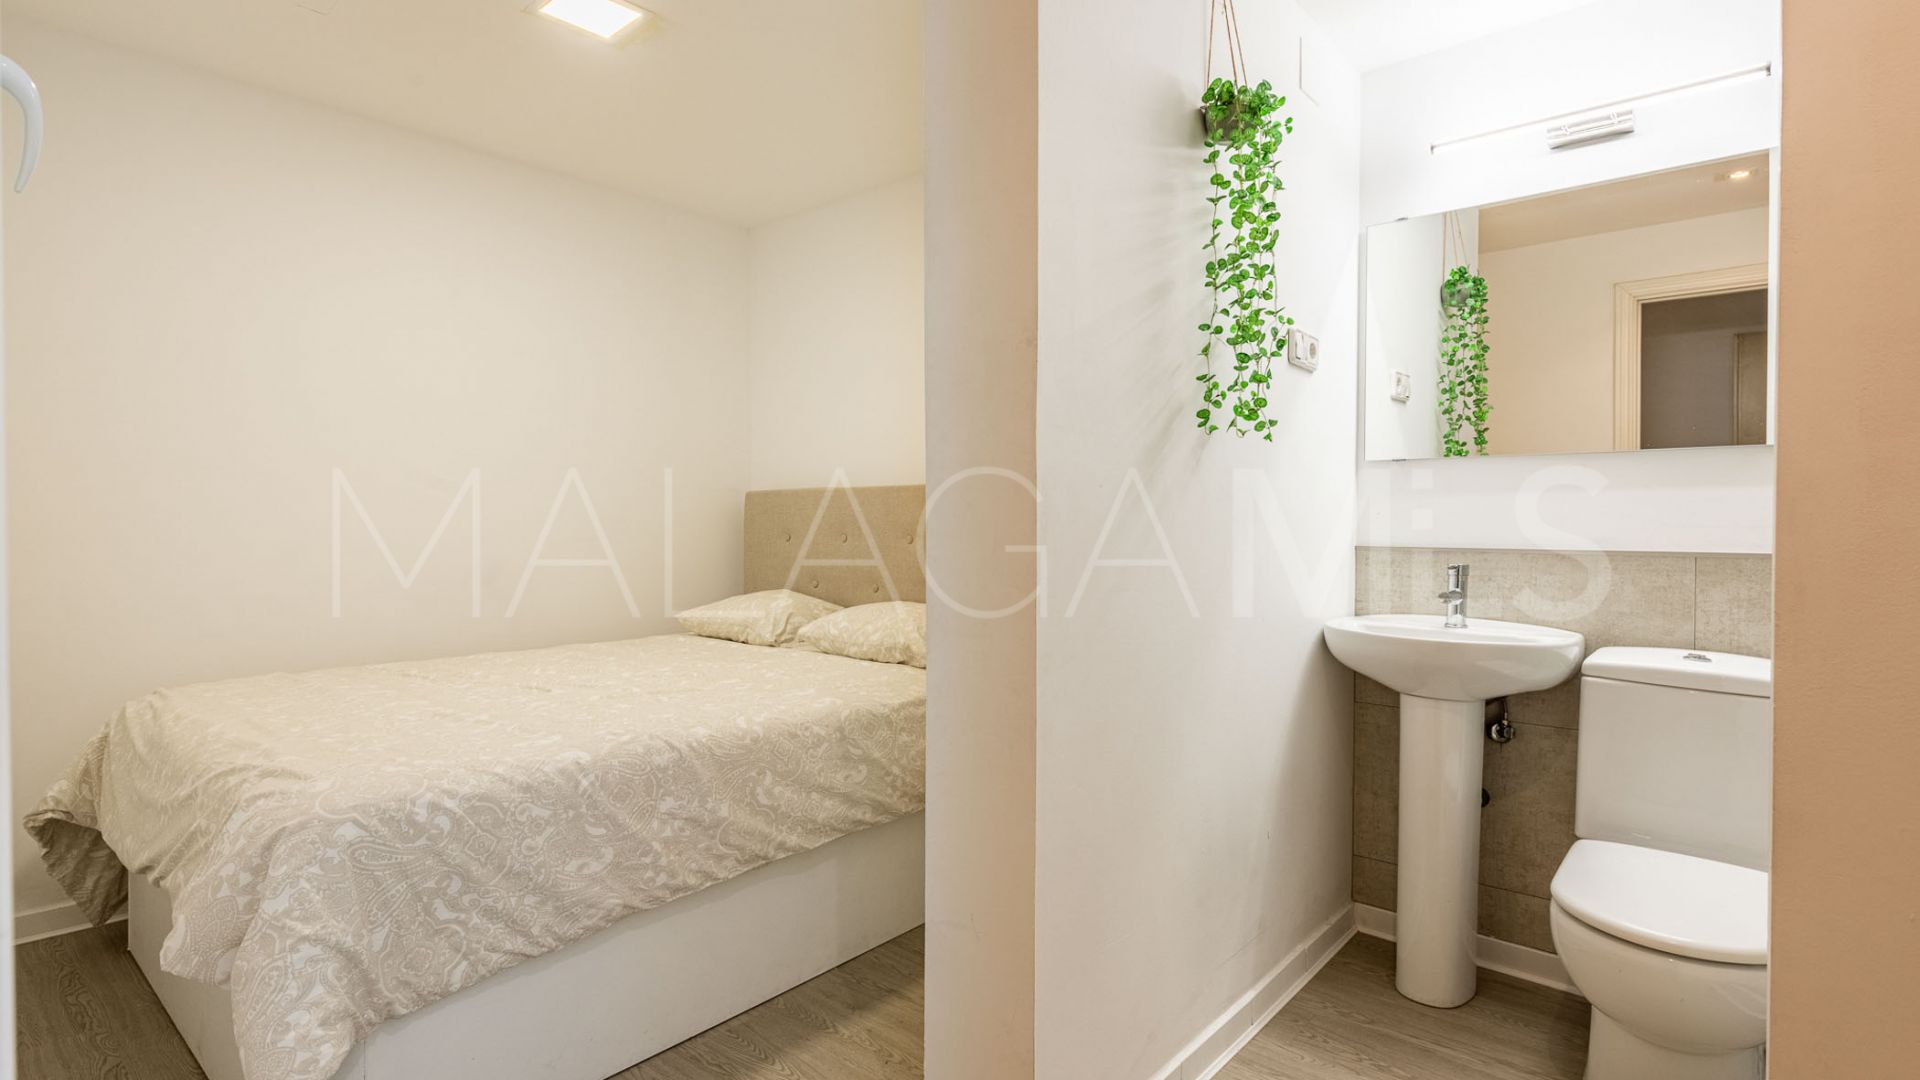 Guadalmina Baja, adosado de 4 bedrooms for sale